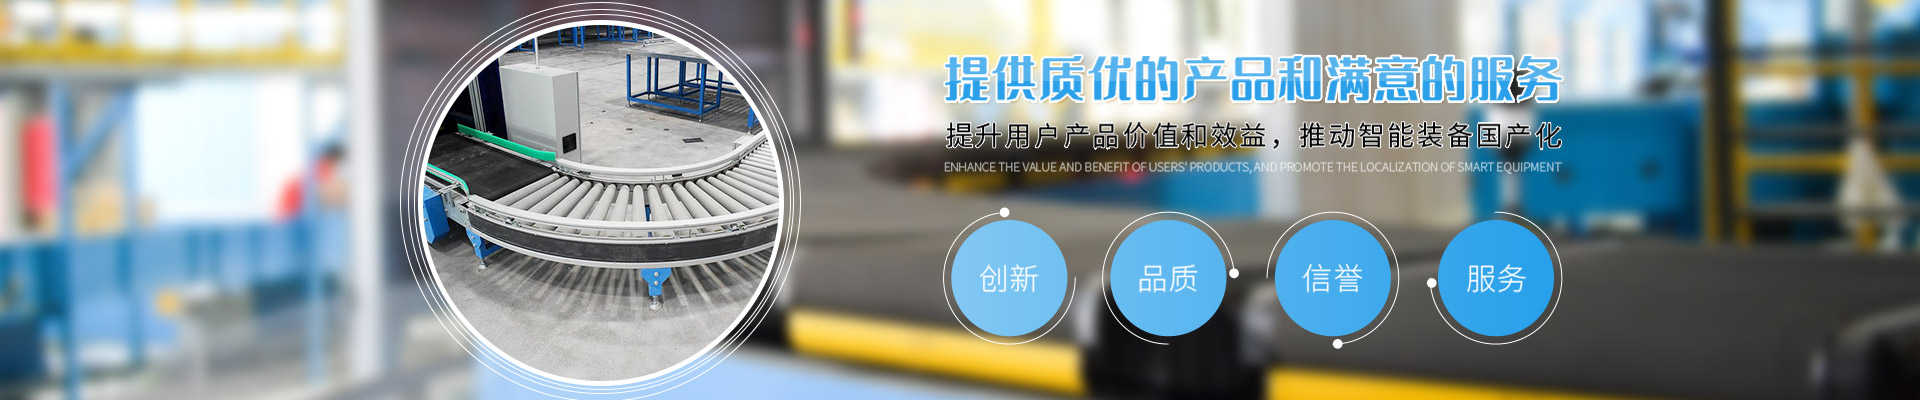 上海语鼎自动化设备有限公司公司介绍